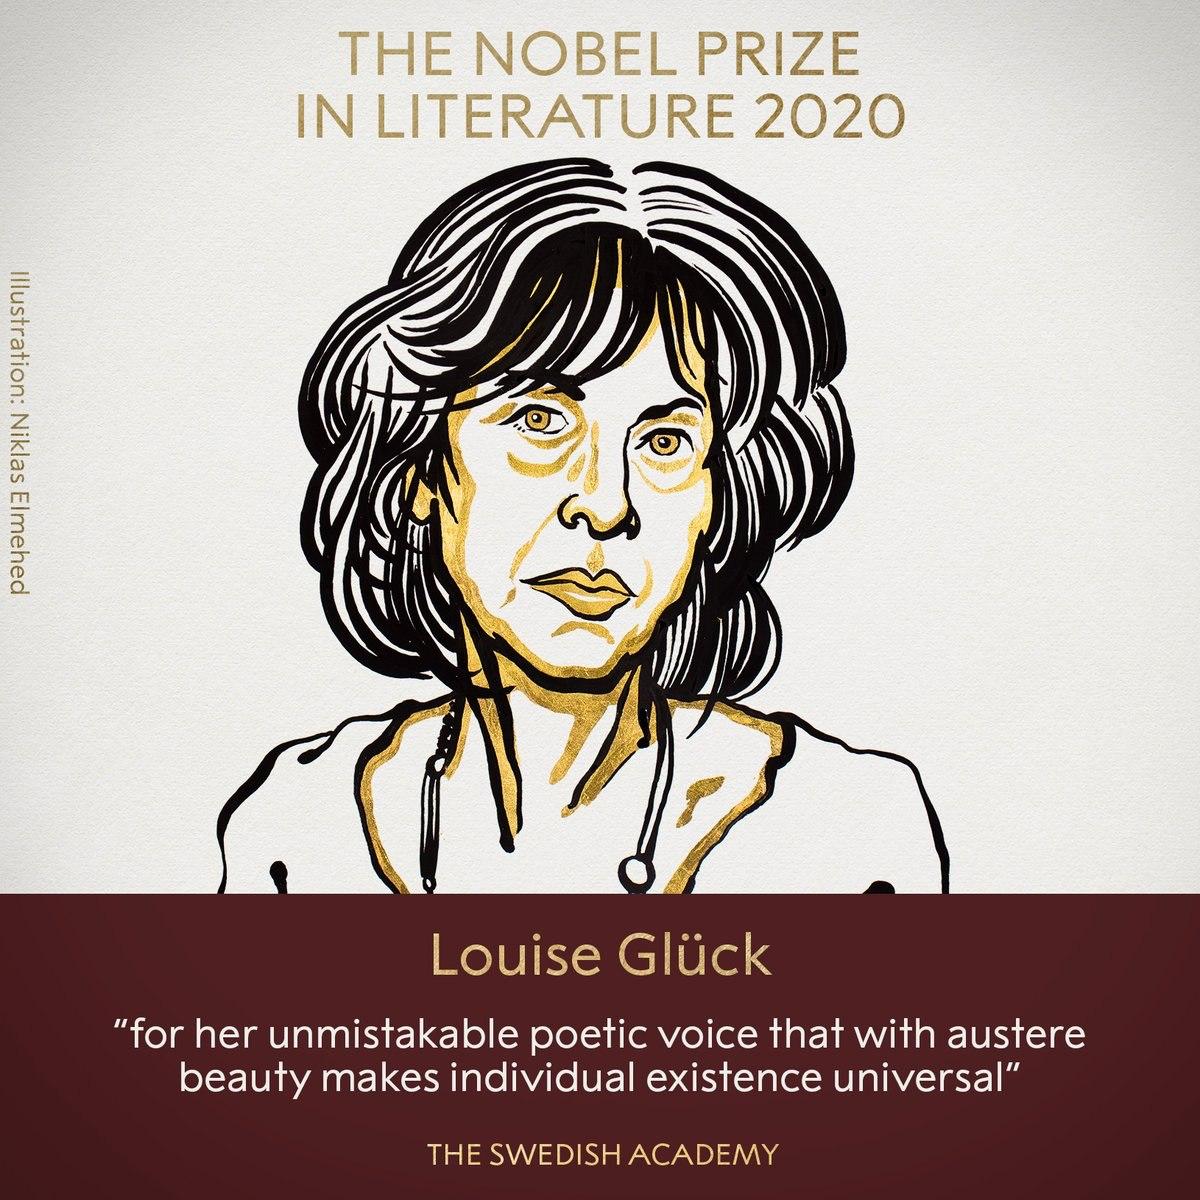 Нобелевская премия по литературе присуждена американской поэтессе Луизе Глюк. Скриншот: Нобелевская премия в Твиттере